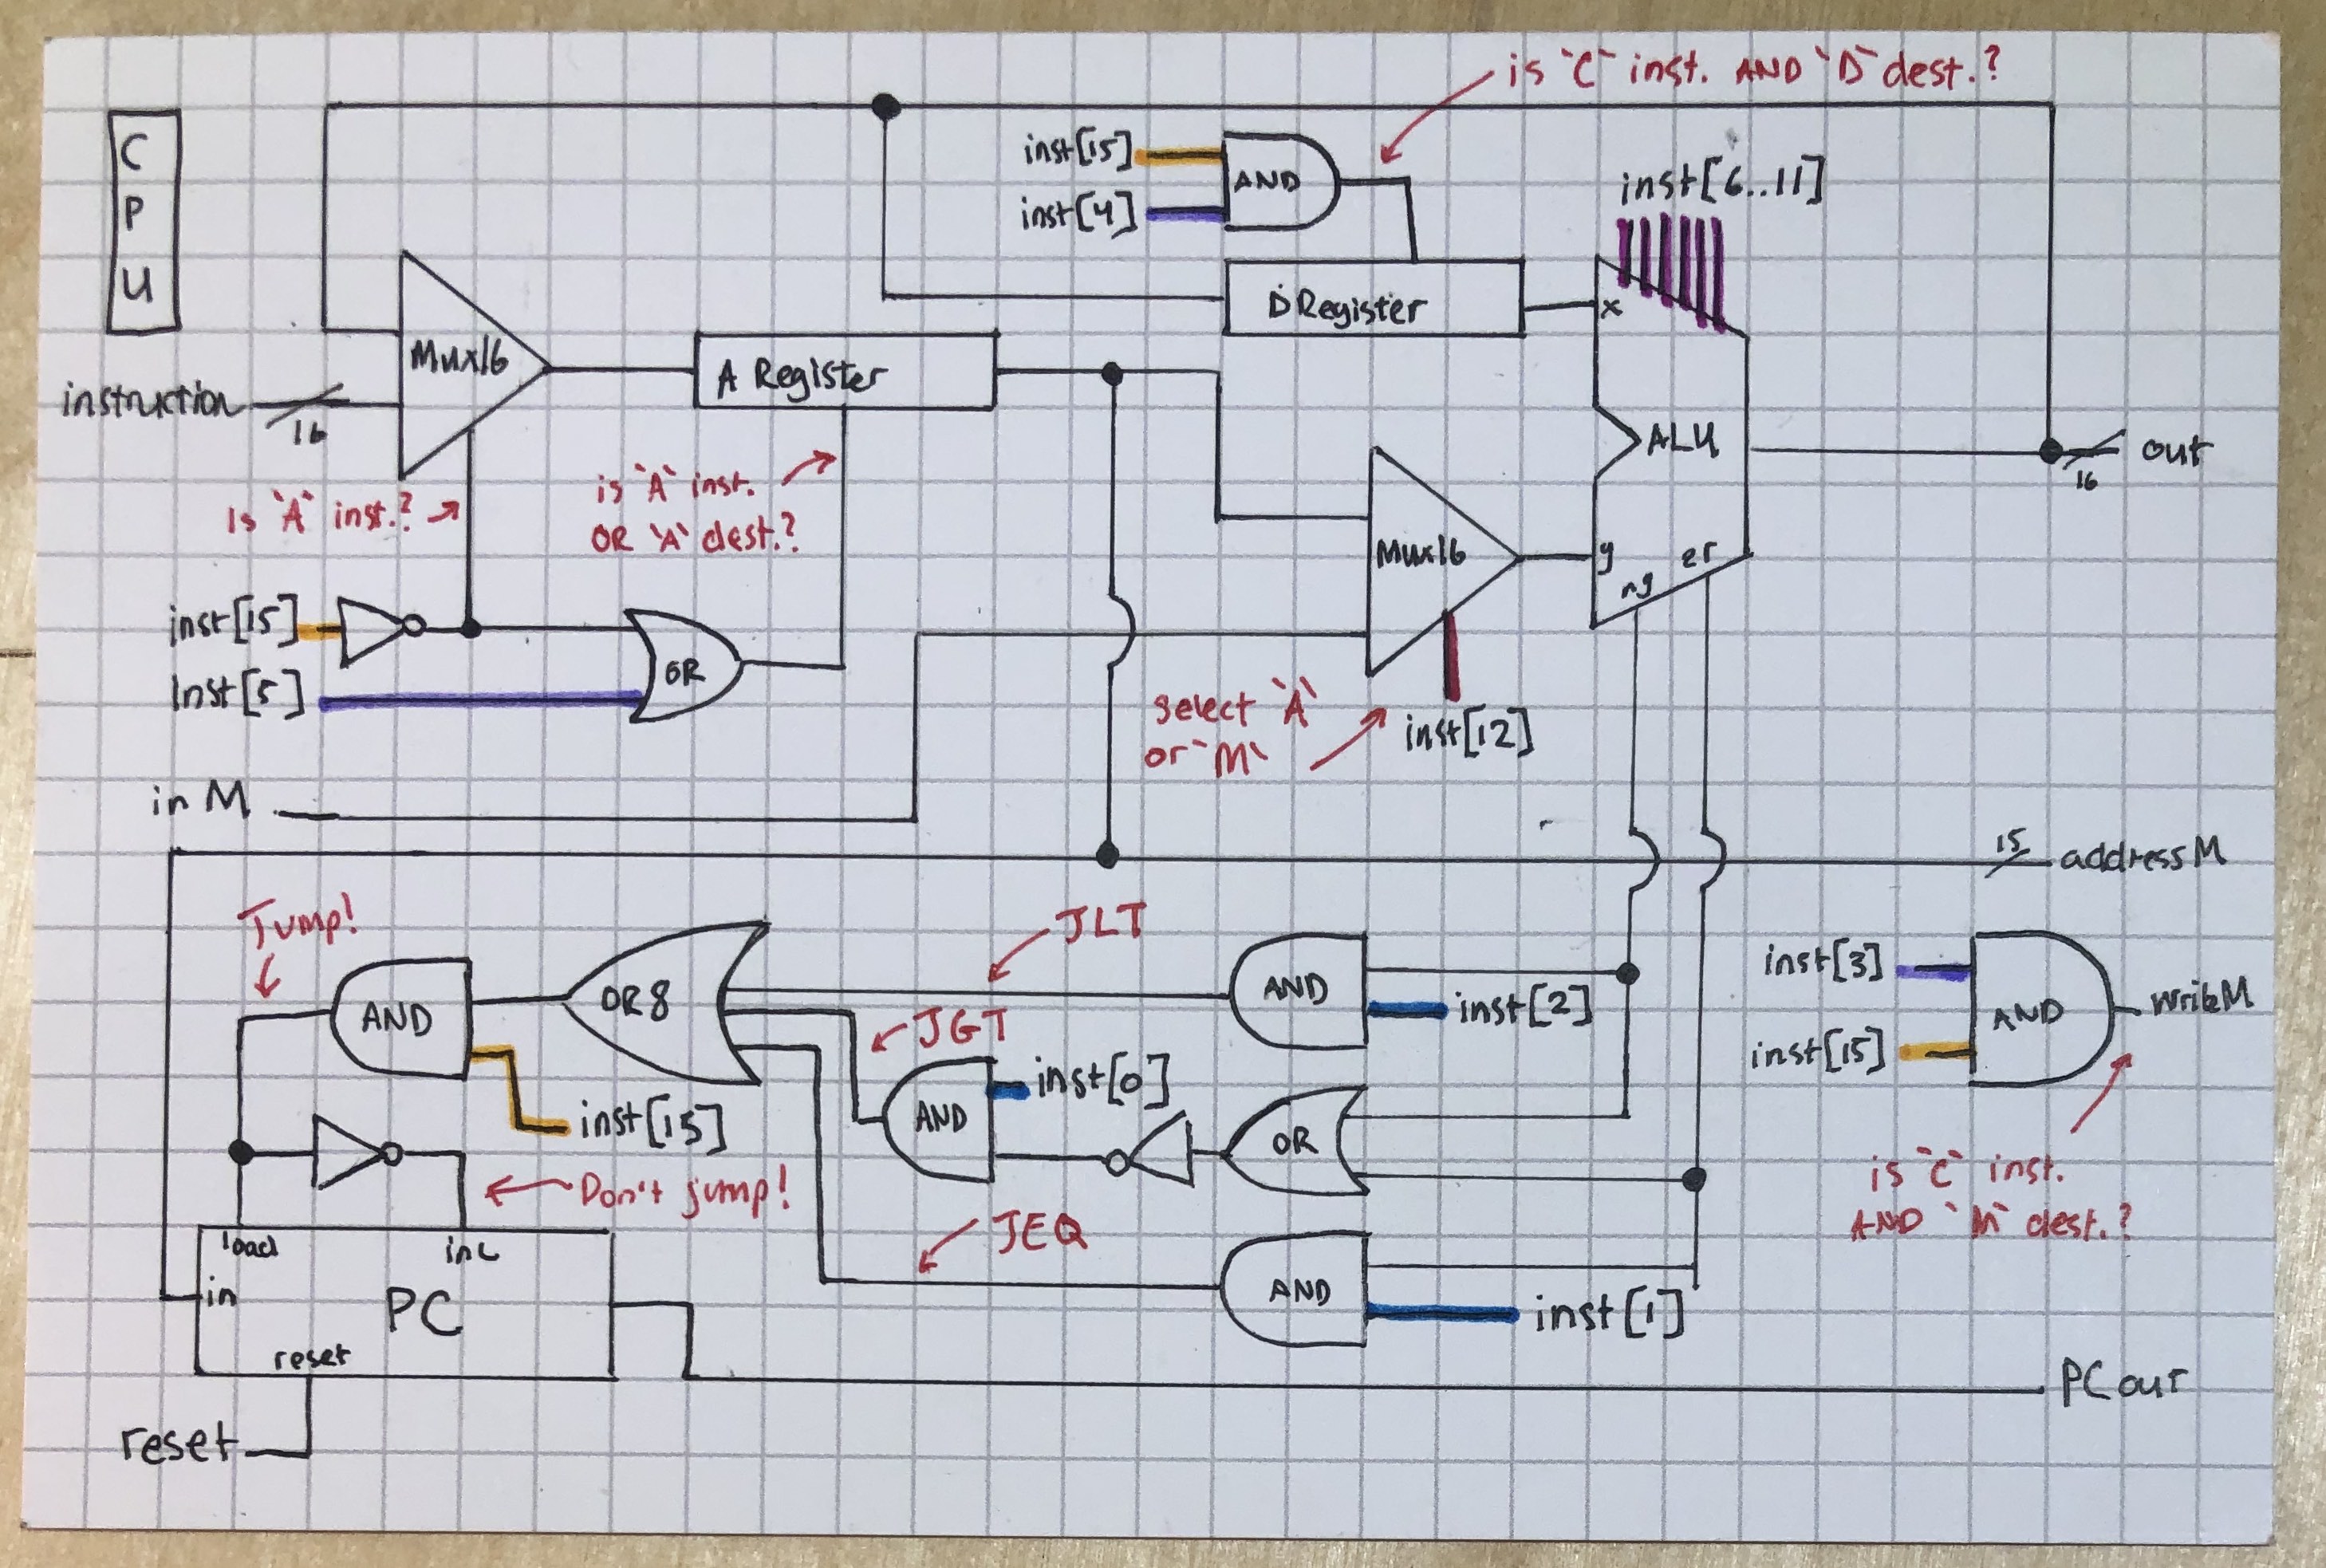 CPU diagram, annotated